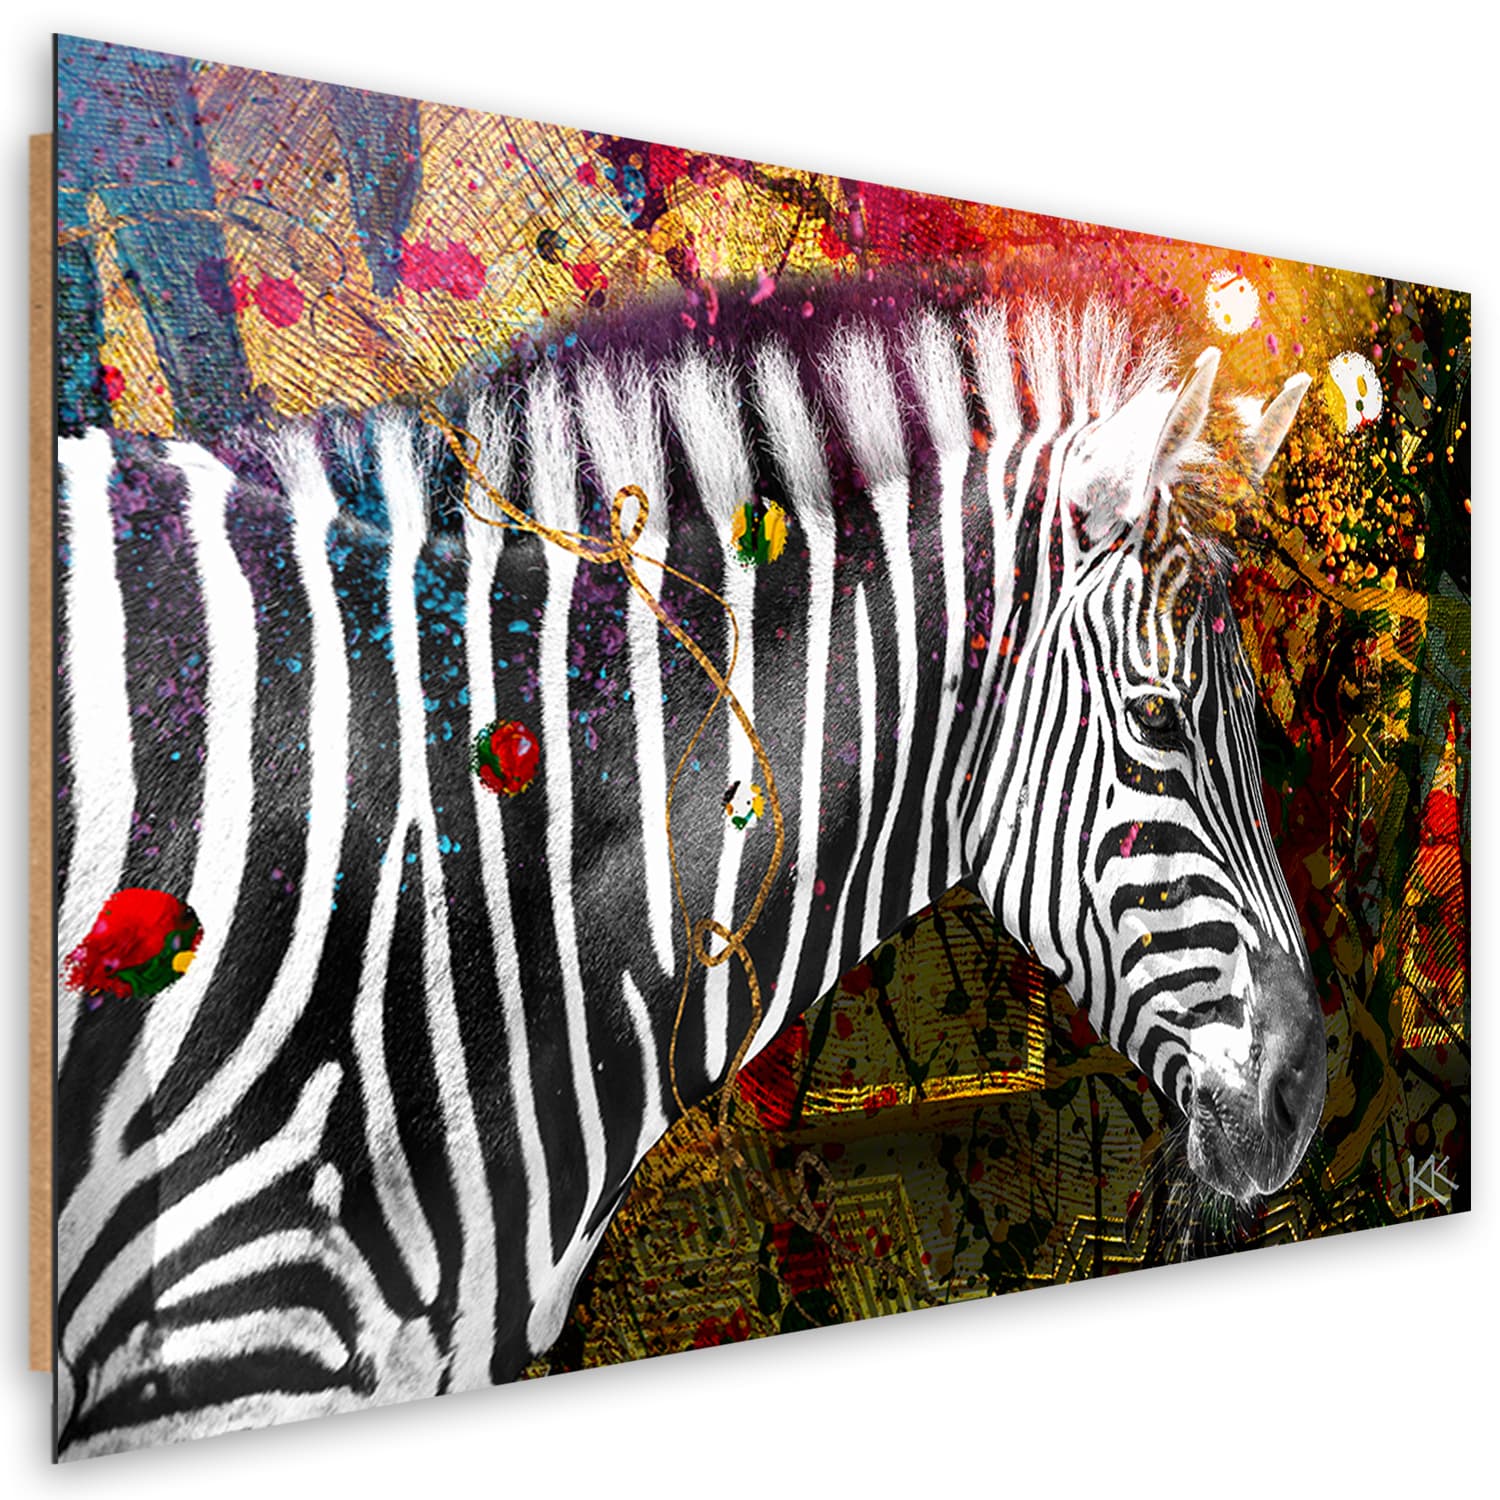 Obraz Deco Panel, Zebra na kolorowym tle (Rozmiar 90x60)